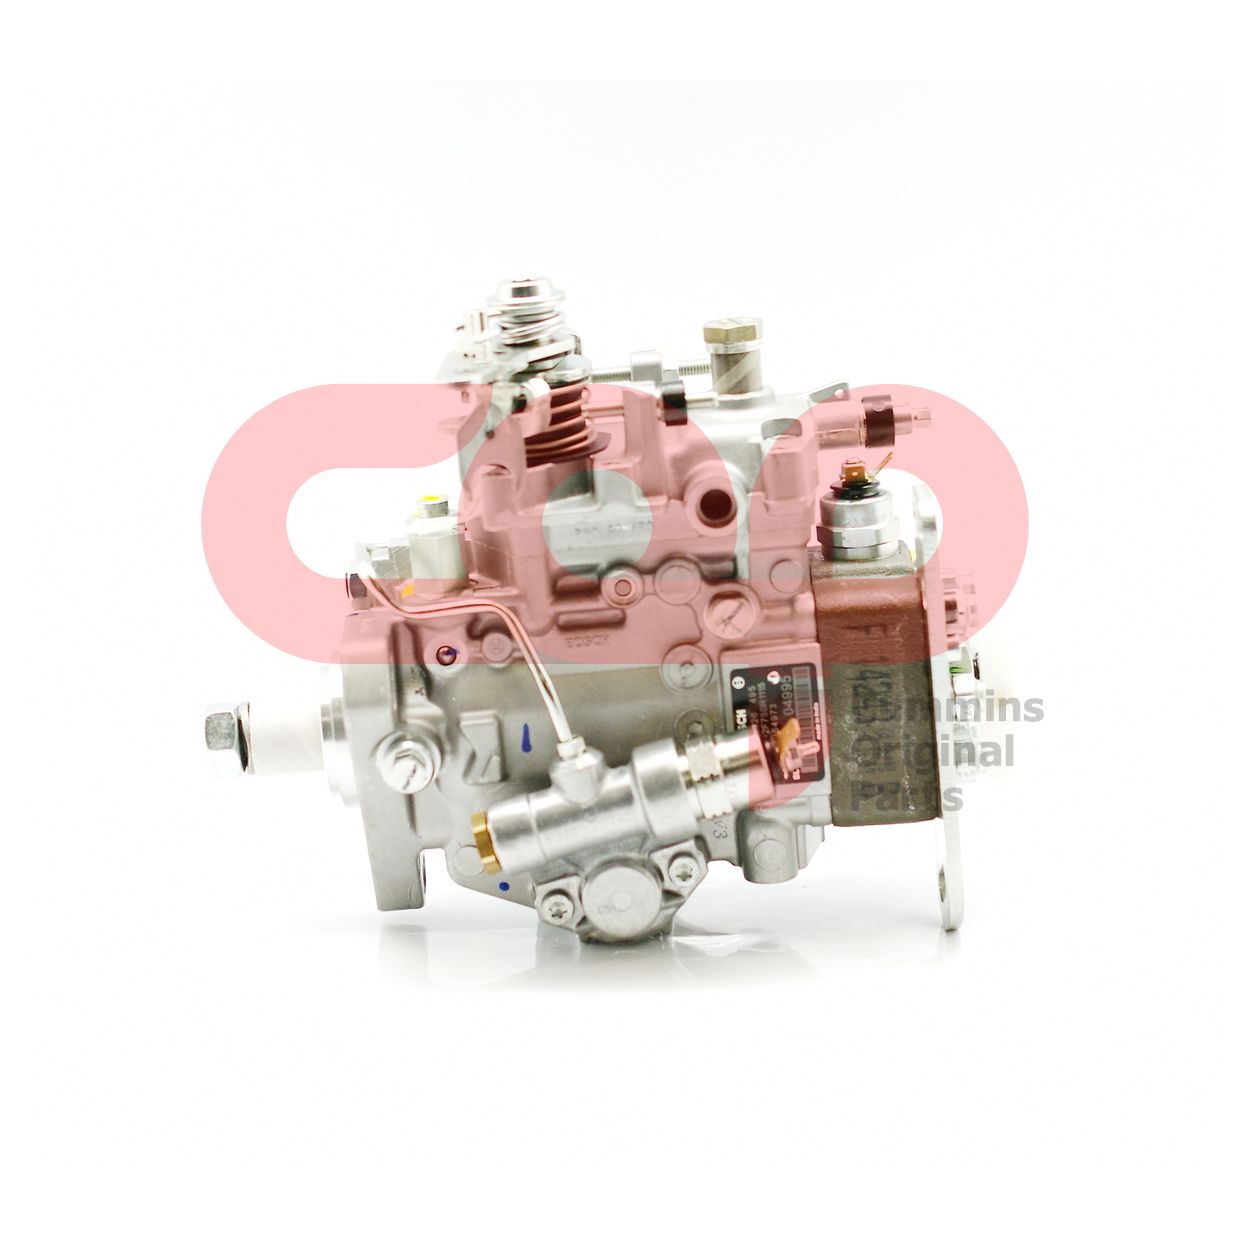 Топливный насос высокого давления (ТНВД) Bosch для газового двигателя Cummins B5.9 Series 5254973